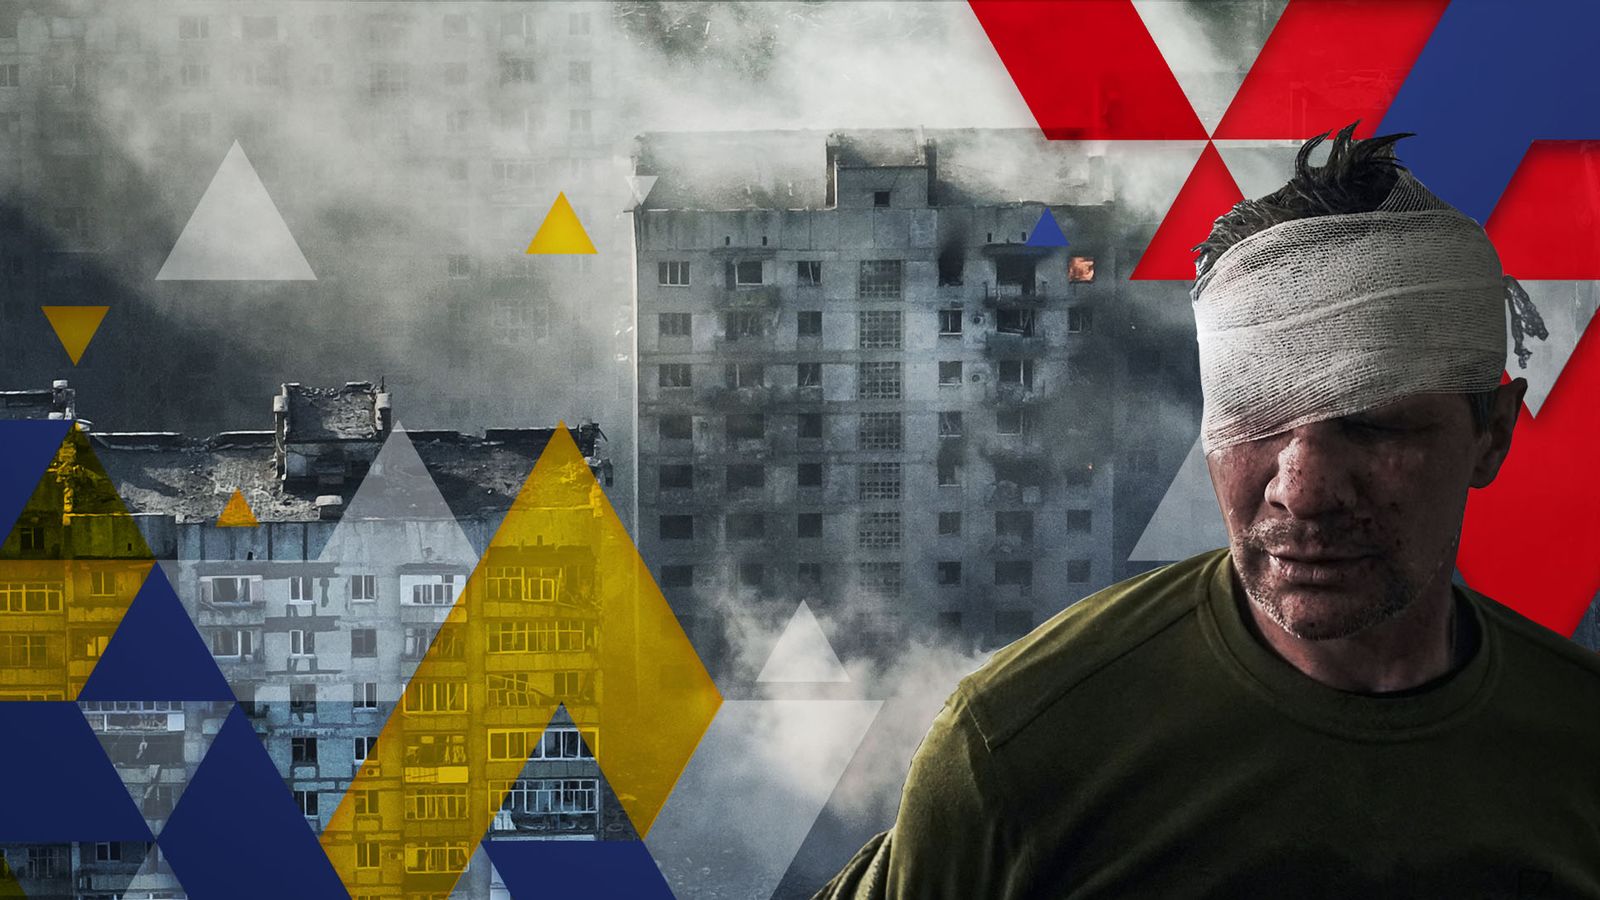 ウクライナ戦争: デッドロックはありますか? それとも嵐の前の静けさですか?  | | 世界のニュース